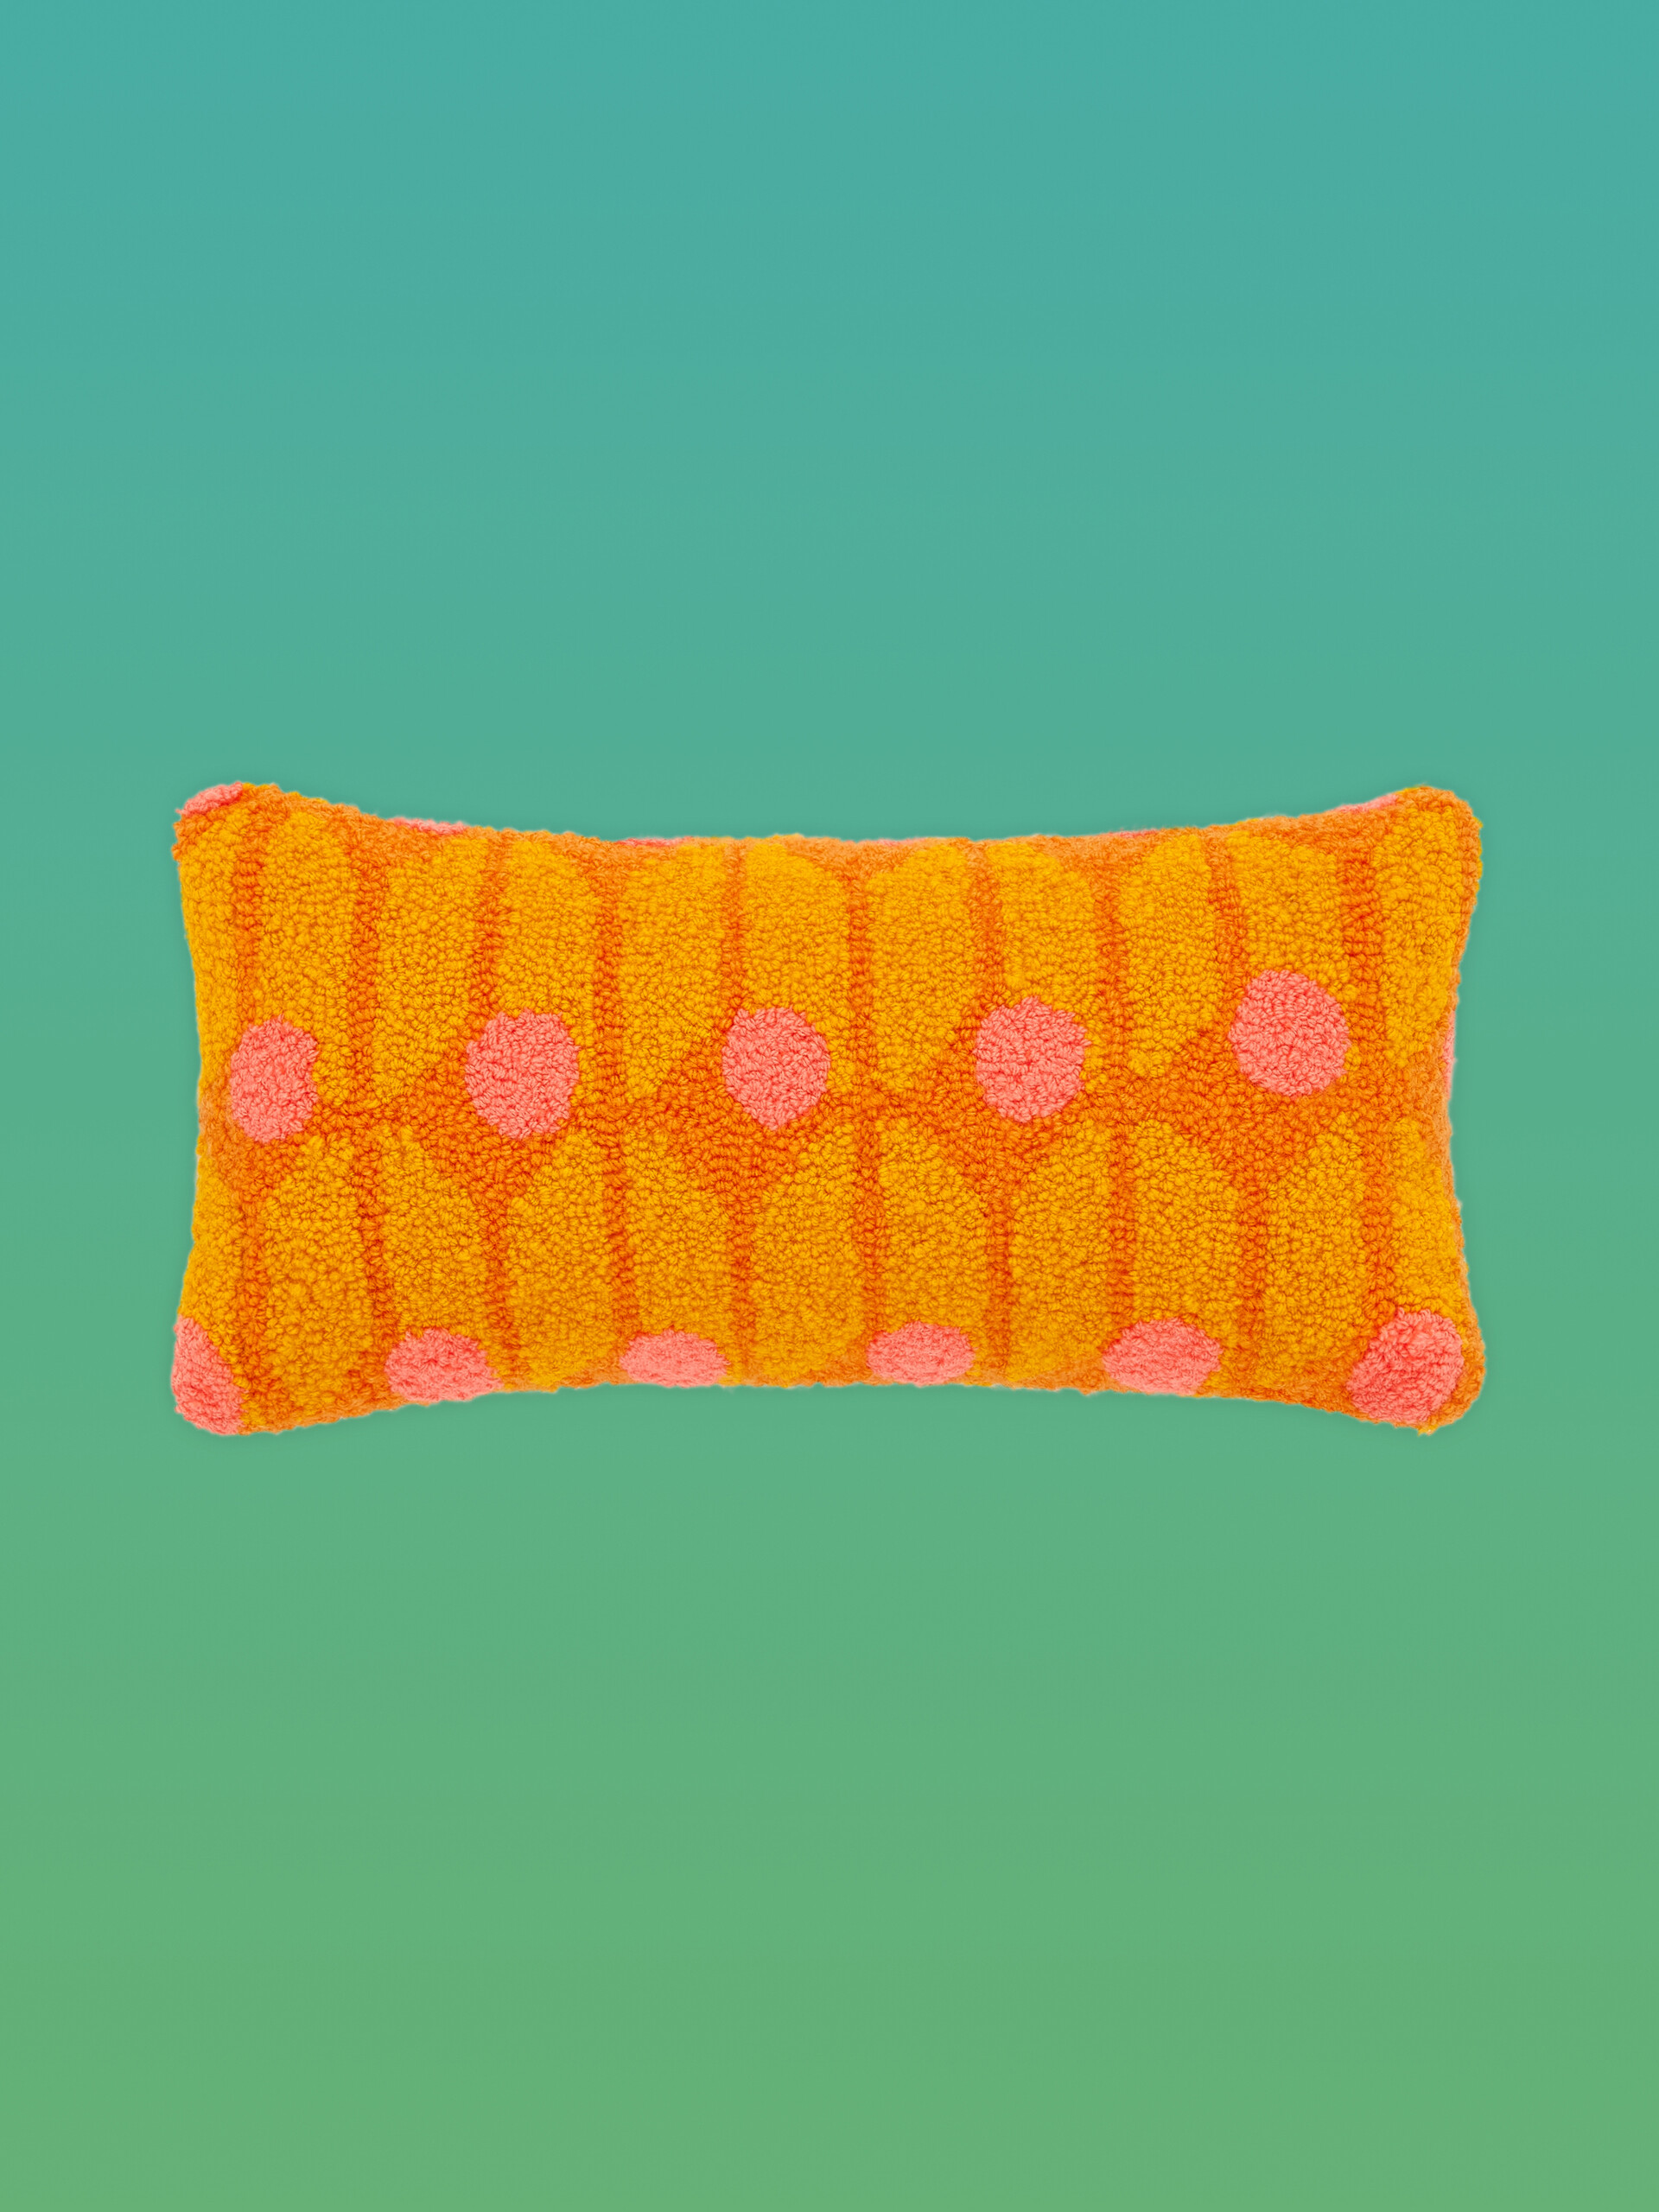 Cuscino MARNI MARKET in tessuto tecnico arancio multicolor - Arredamento - Image 1